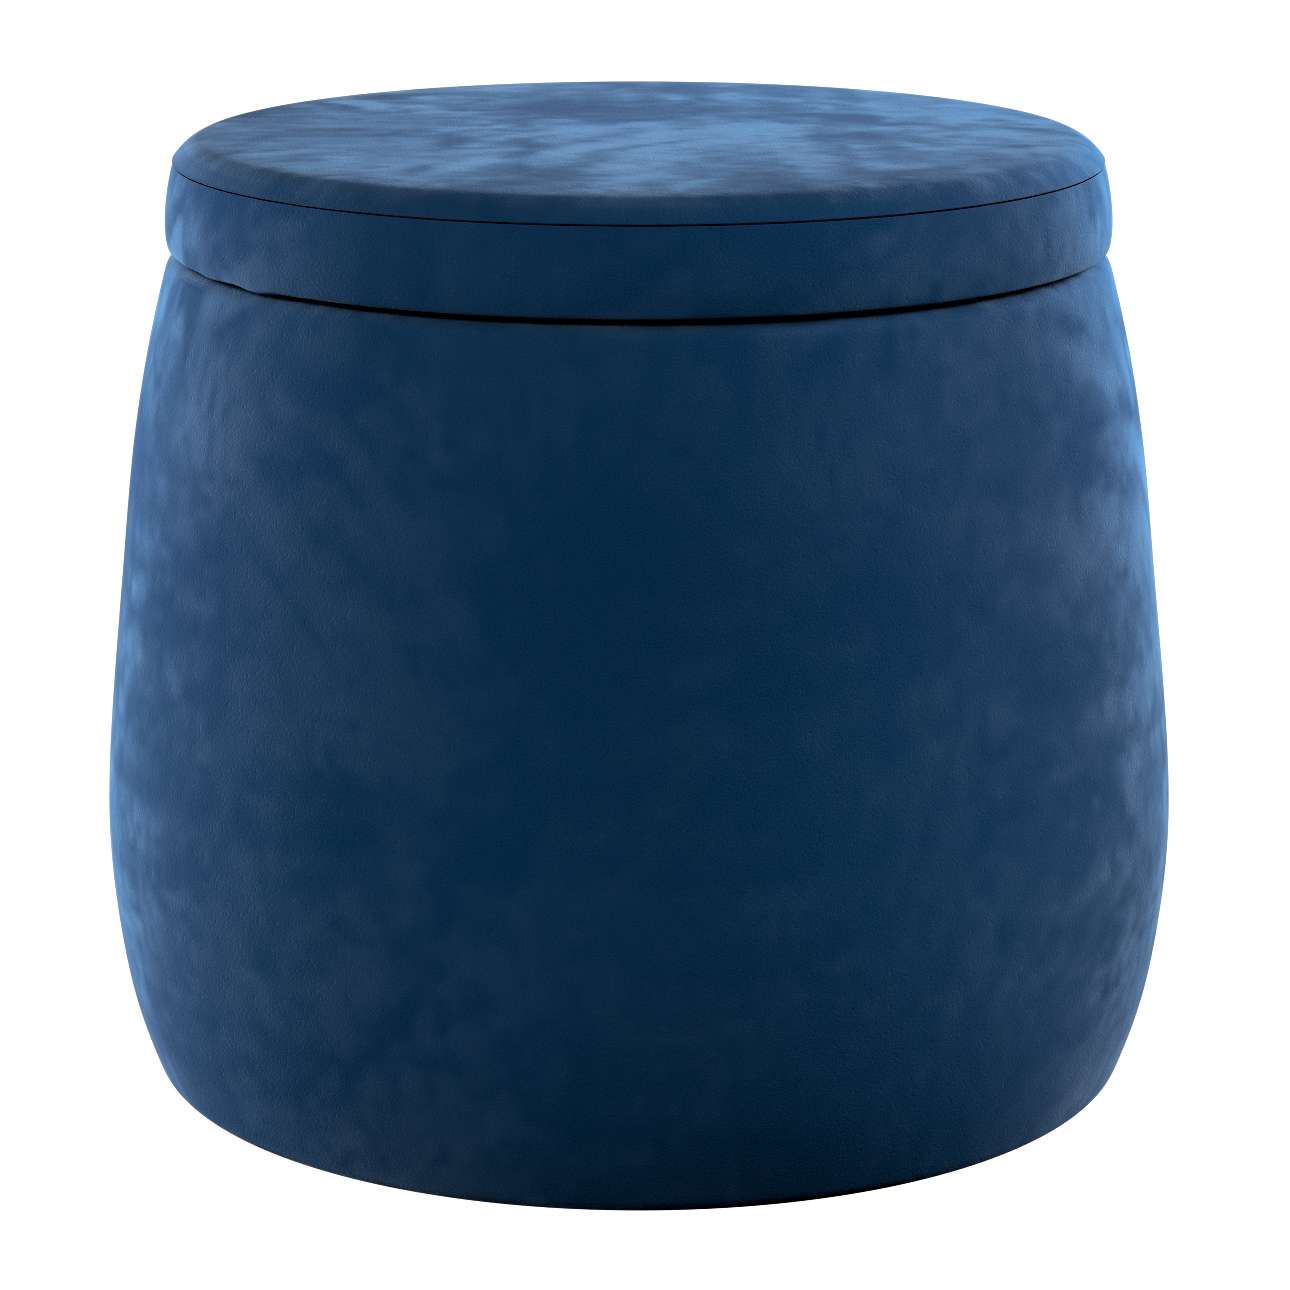 Candy Jar pouf - ø40 - Posh Velvet - navy blue